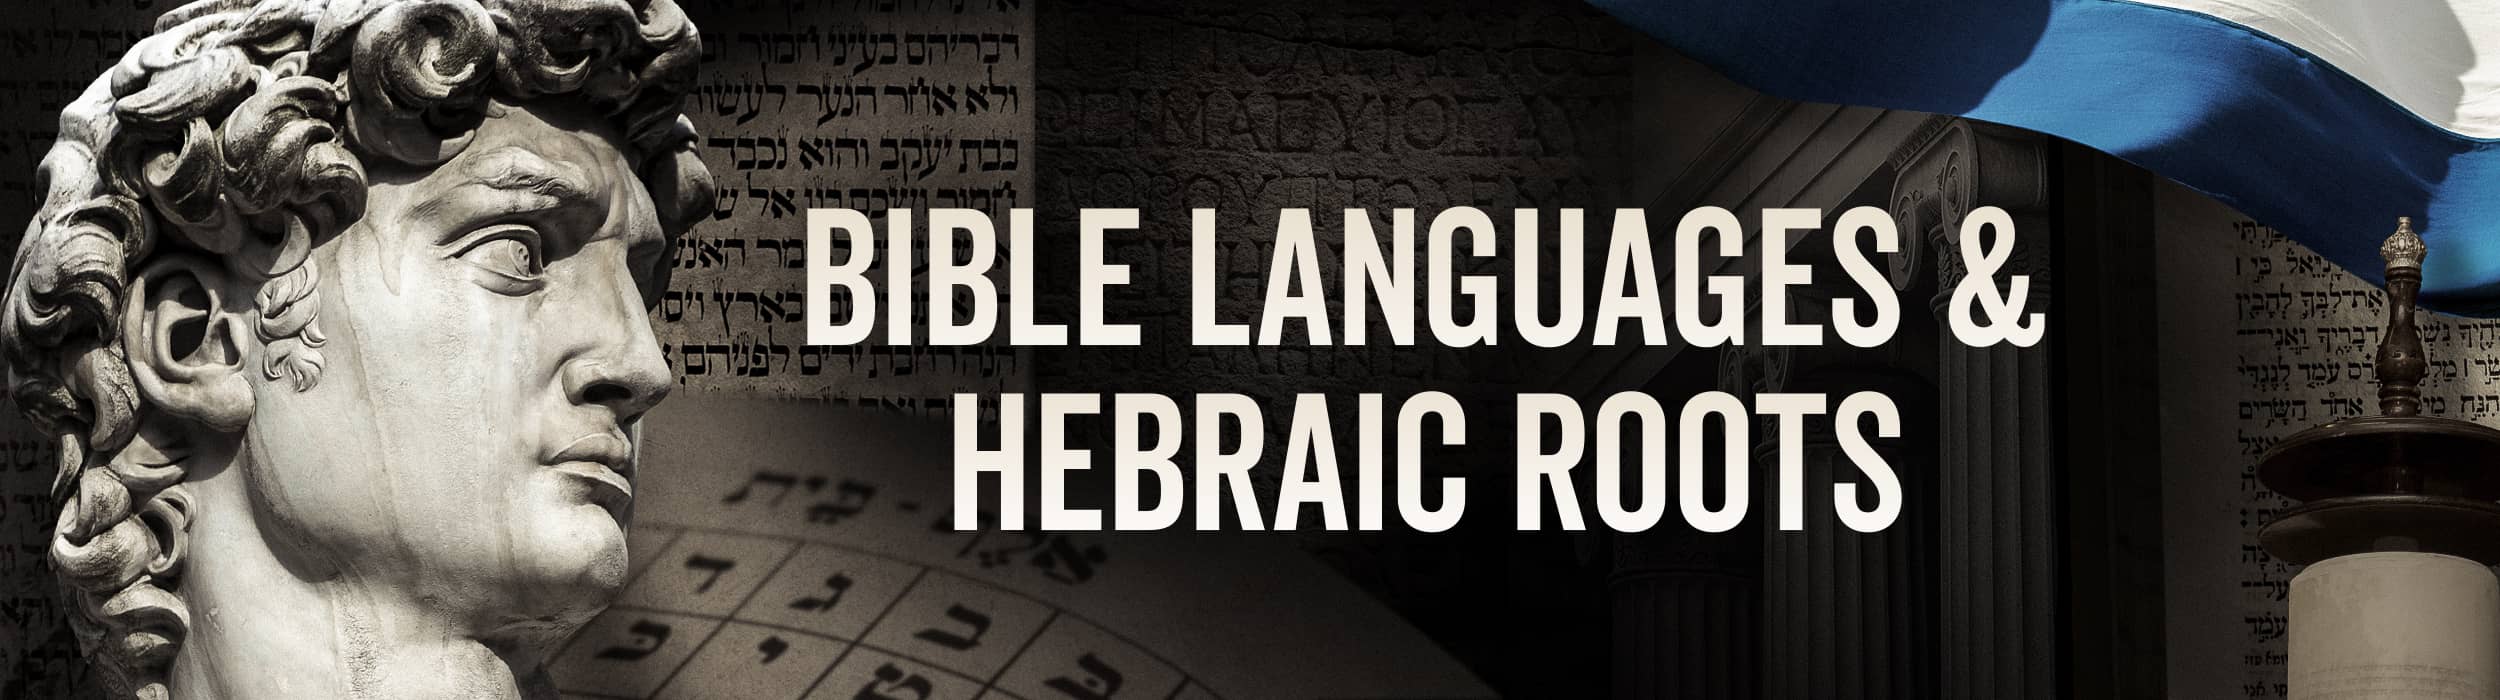 Online Bible Language Courses, Online Hebraic Bible Study Courses